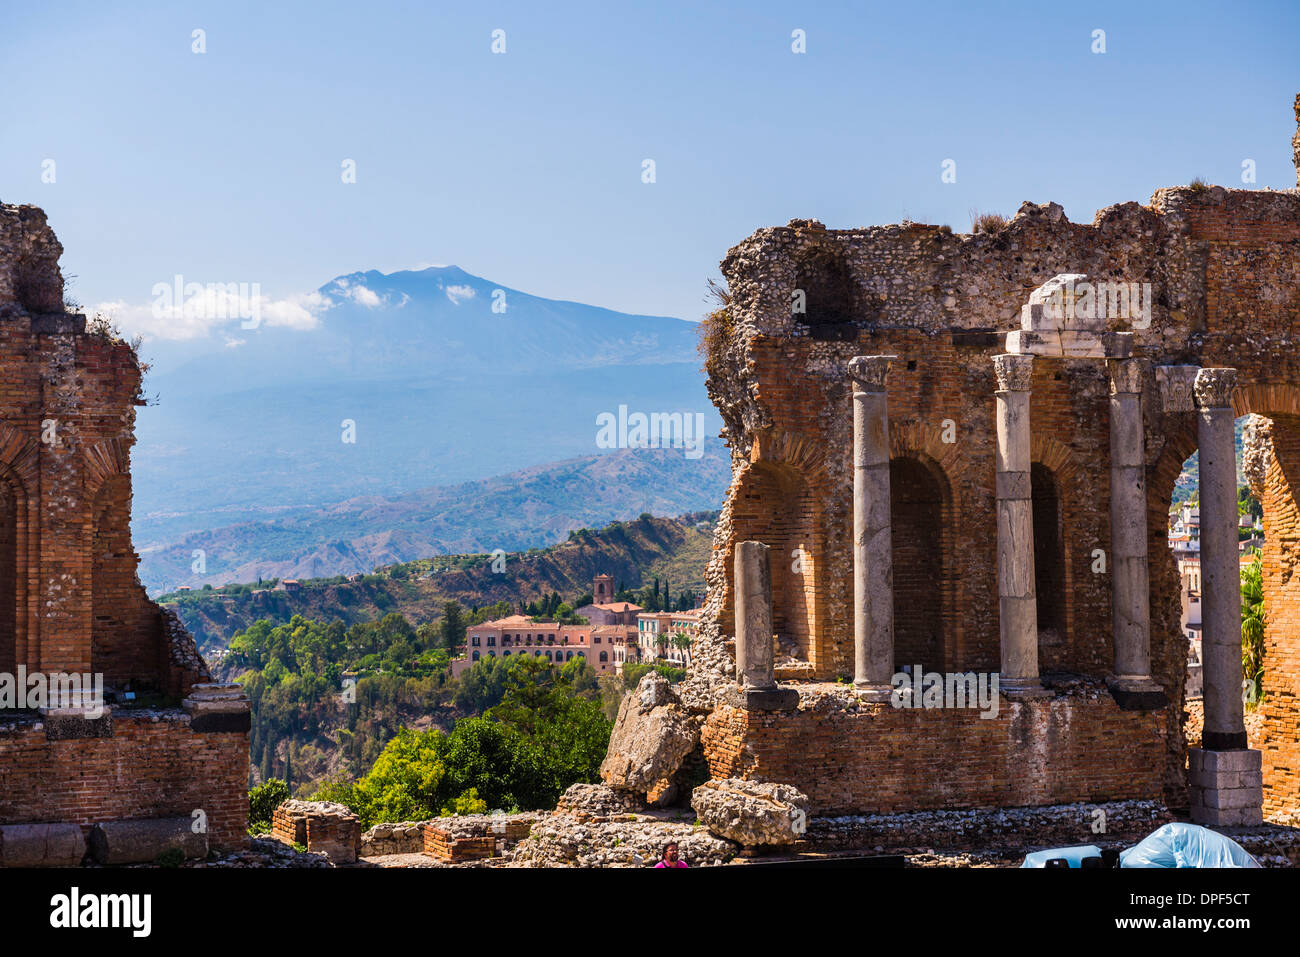 Teatro Greco (Théâtre Grec), ruines de colonnes à l'amphithéâtre, et le Mont Etna, Taormina, Sicile, Italie, Europe Banque D'Images